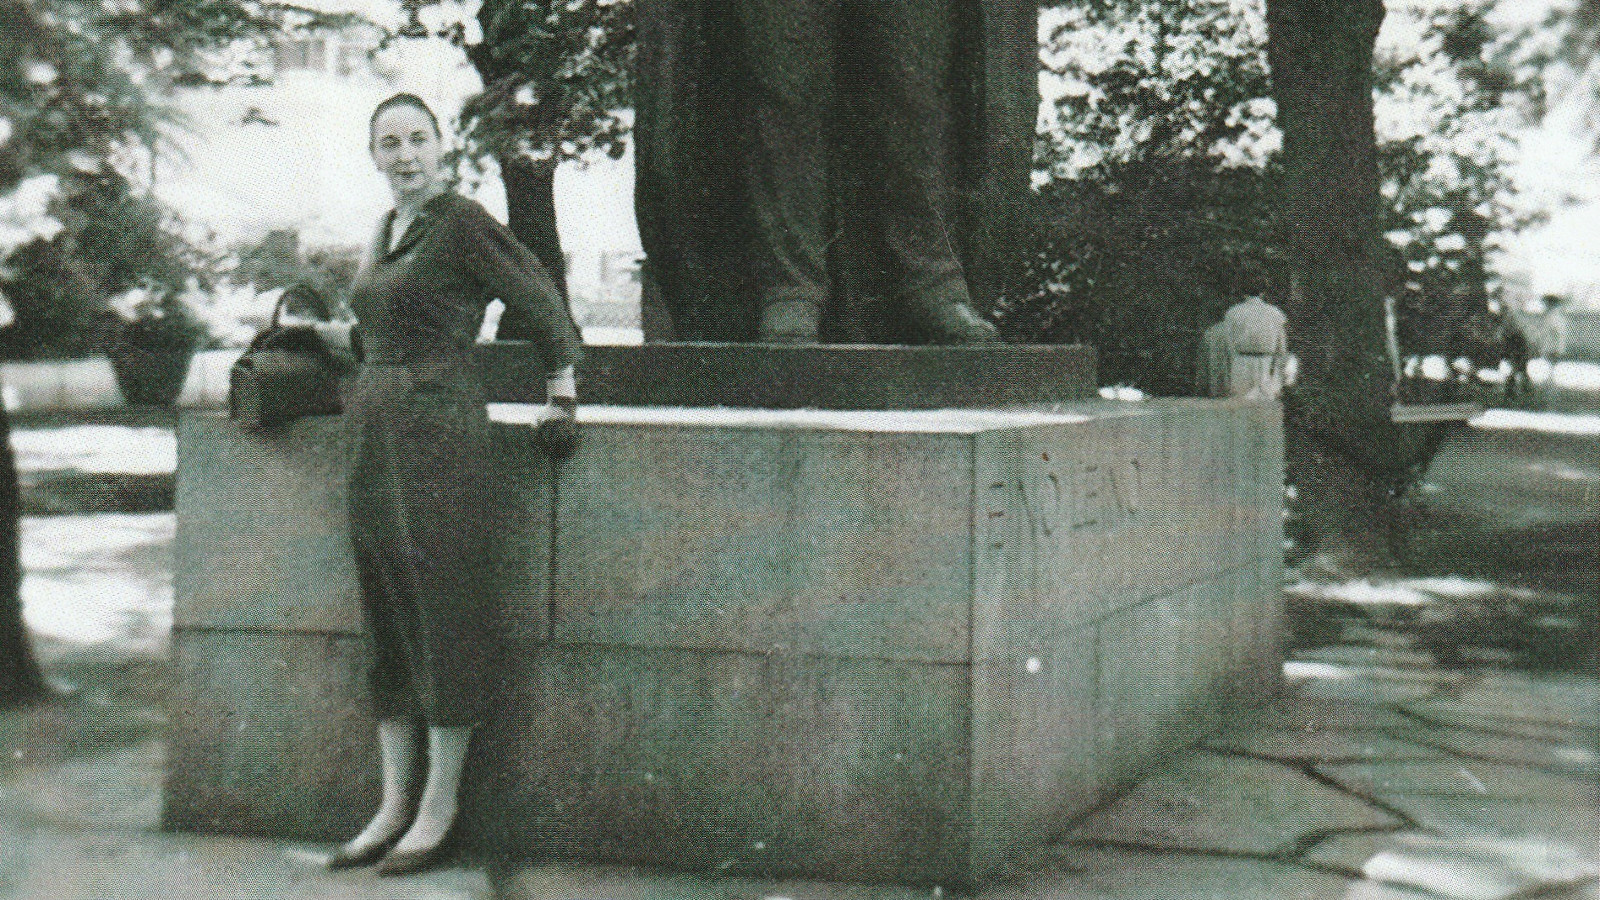 Kuvassa on Helena Eeva ison patsaan juurella seisomassa.  Hänllä on kapea musta puolihame päällään. Kuva on musta-valkoinen.